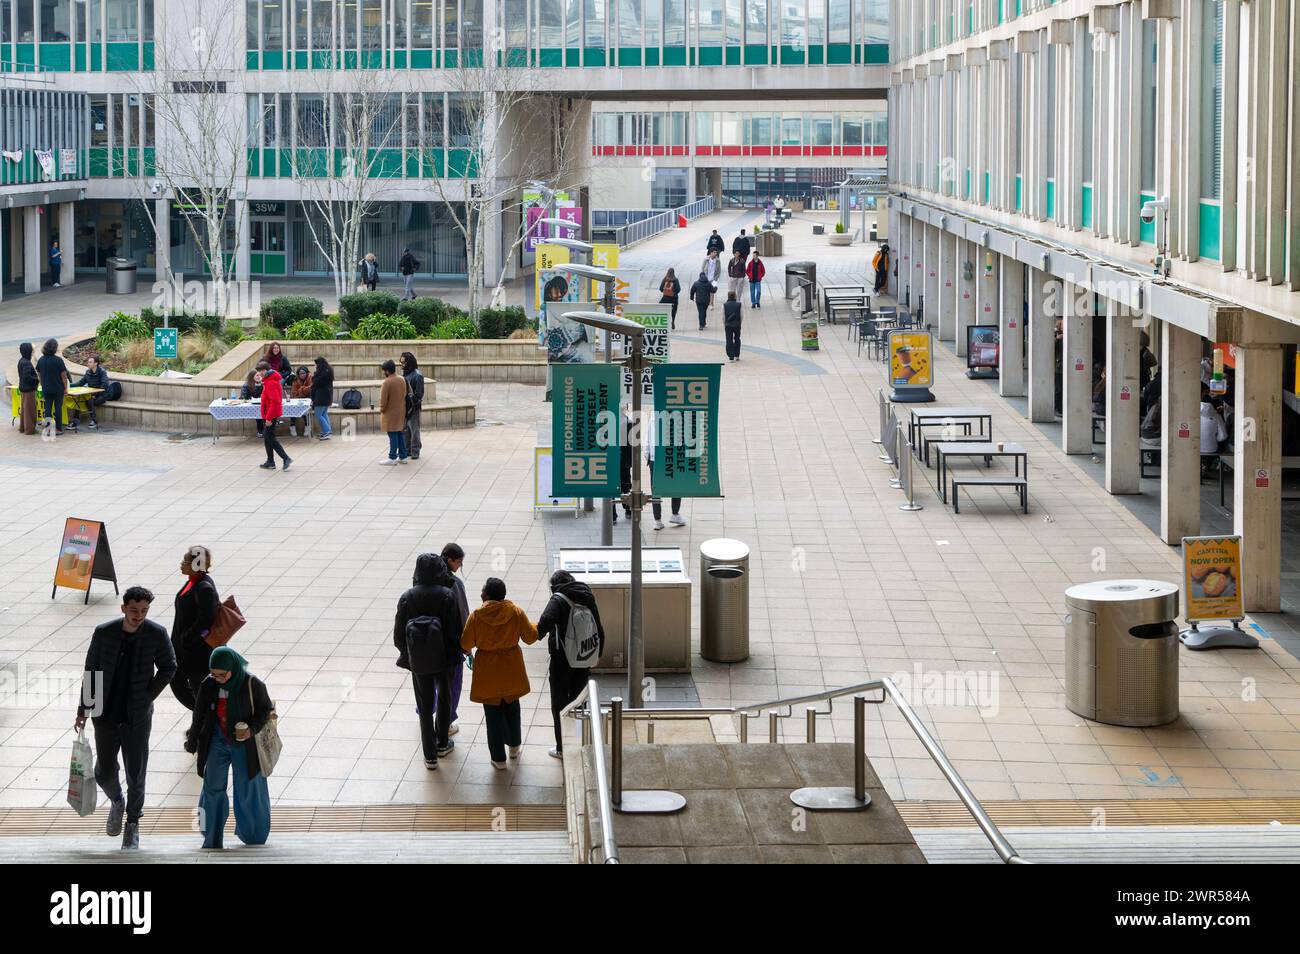 Studenten, die auf dem Campus spazieren gehen, University of Essex, Colchester, Essex, England, UK Stockfoto